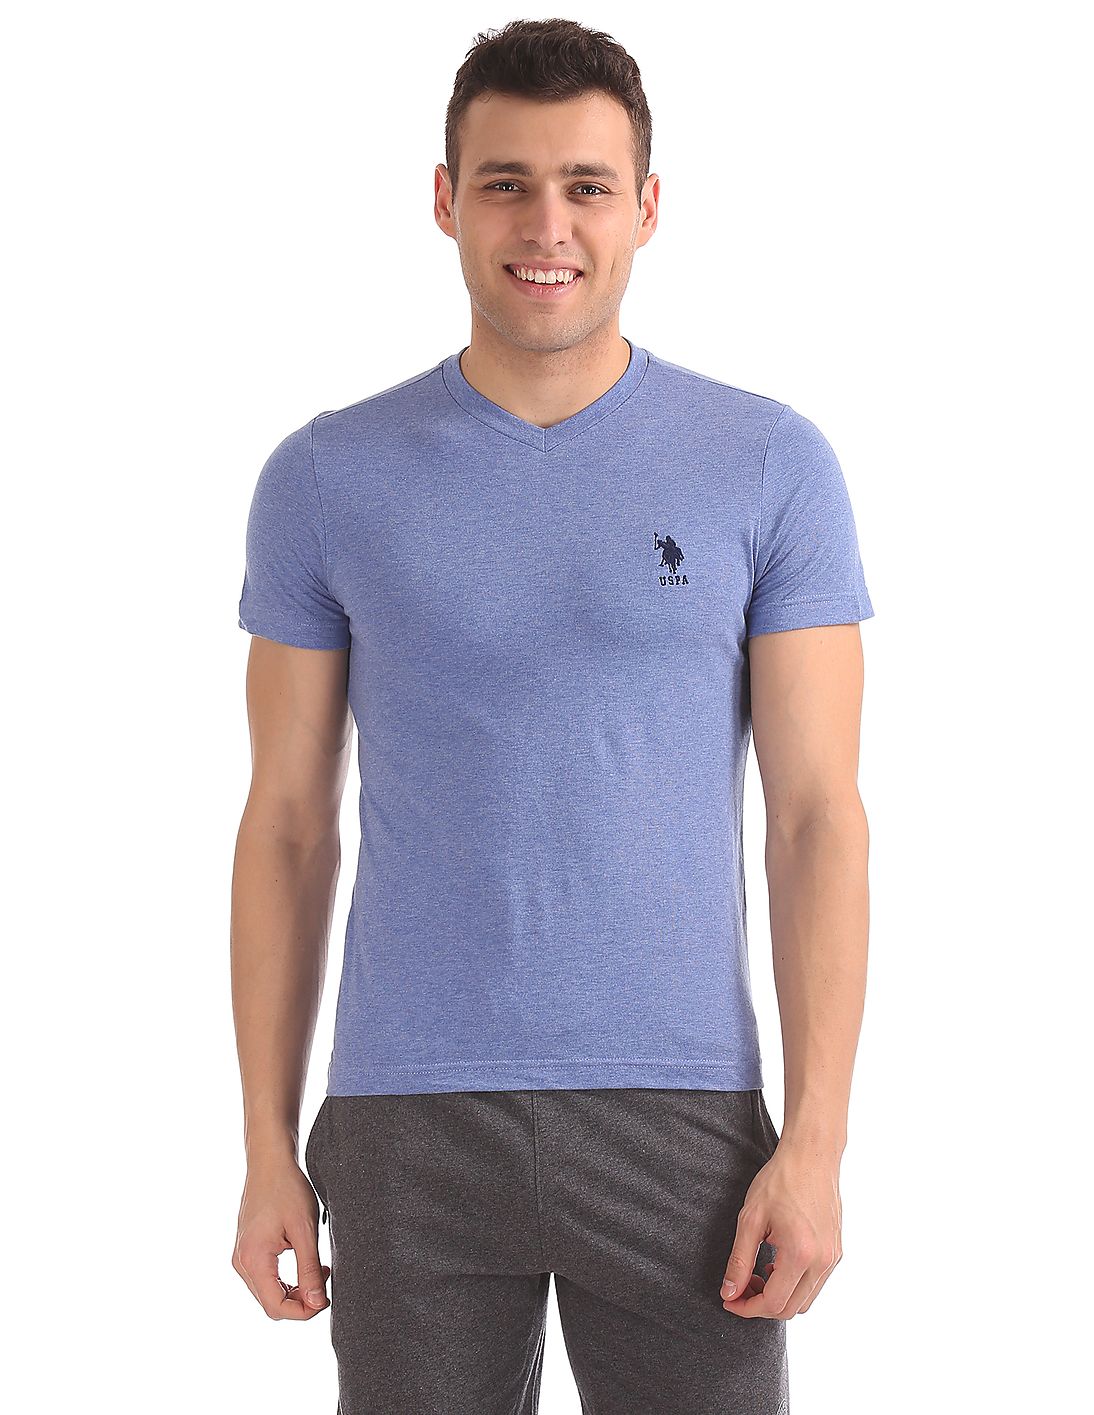 U.S. Polo Assn. Short Sleeve V-Neck T-Shirt Blue for Men - Stilento